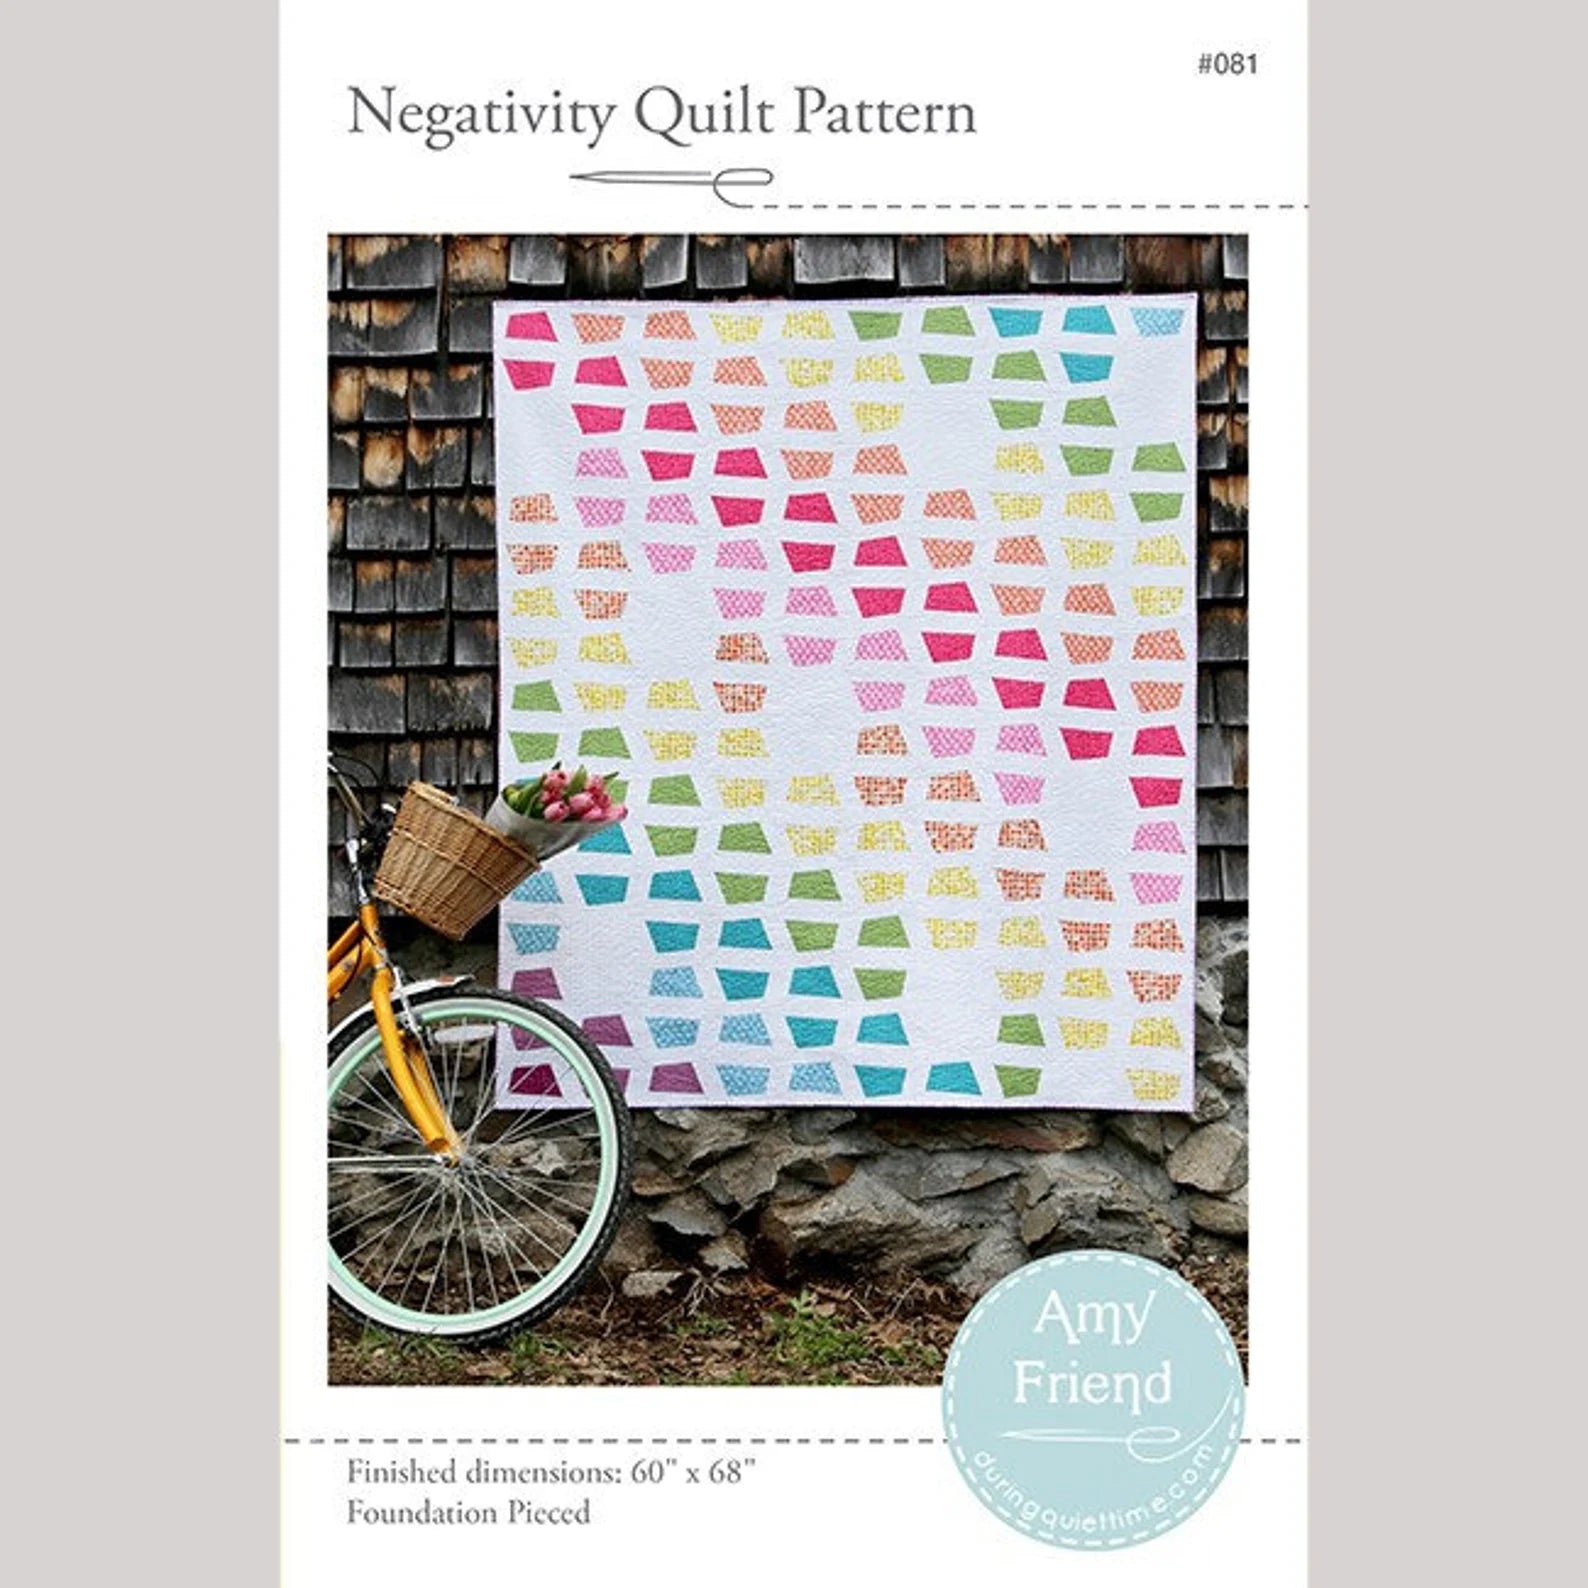 Negative Quilt Pattern : Amy Friend